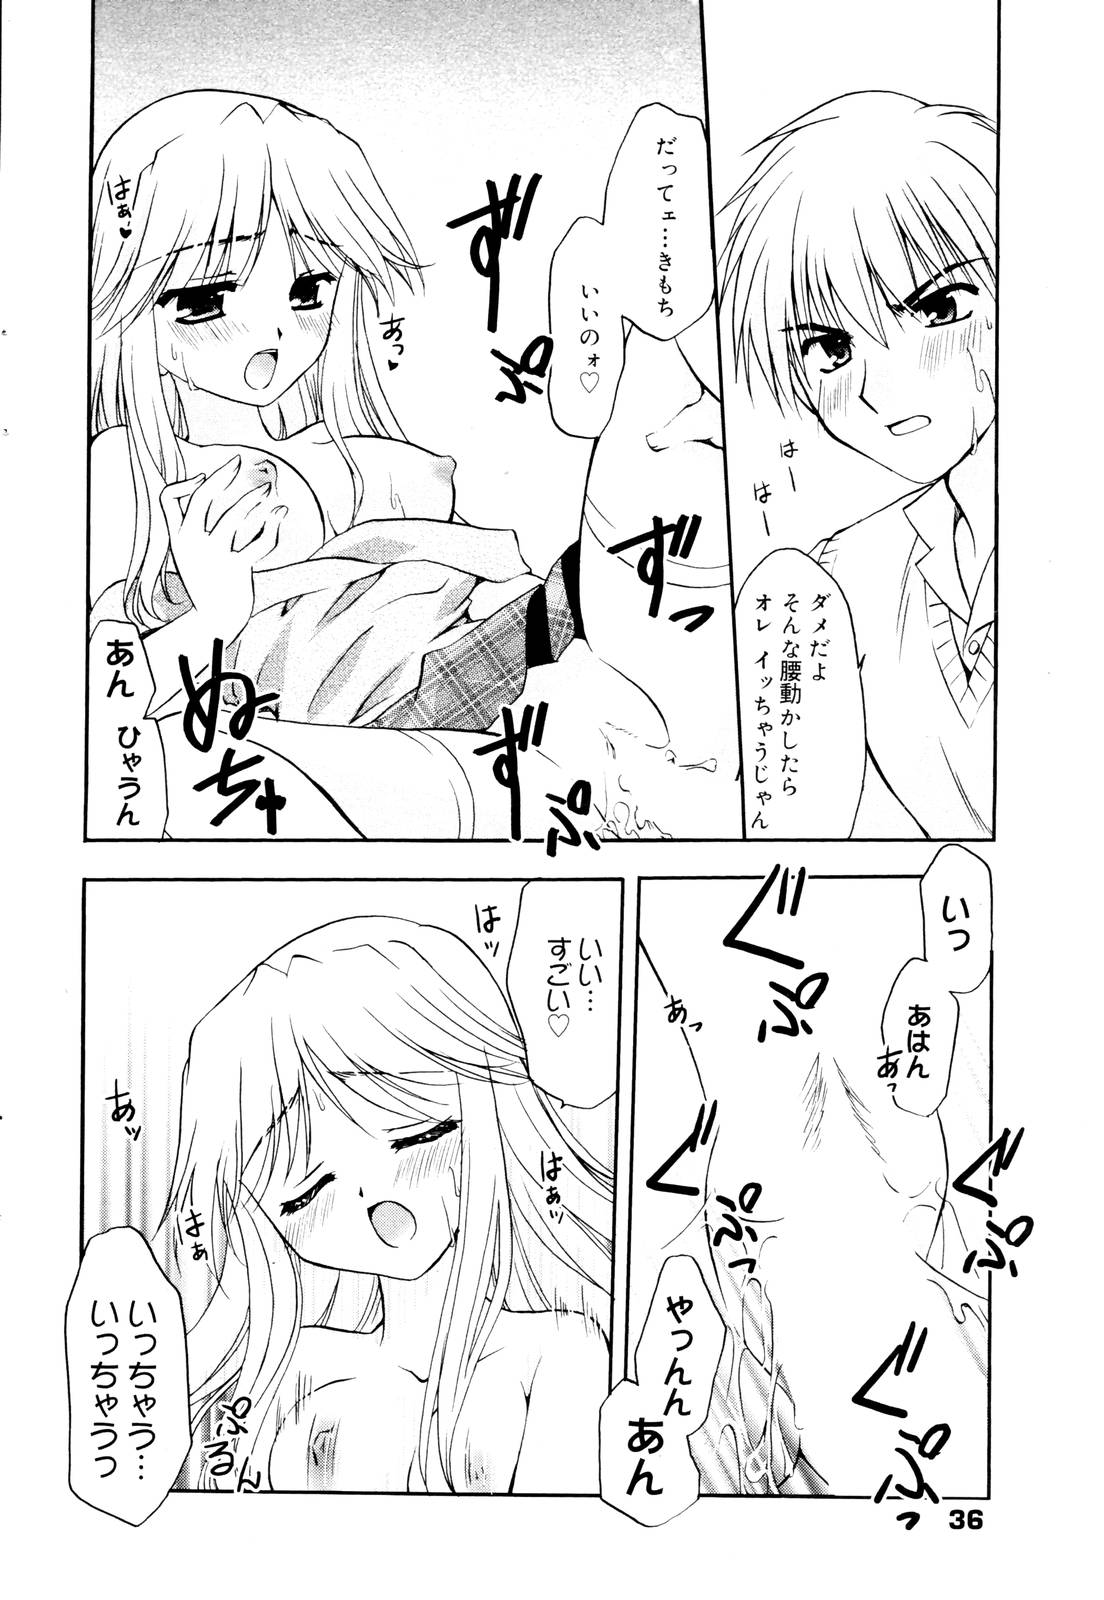 Manga Bangaichi 2006-01 page 36 full